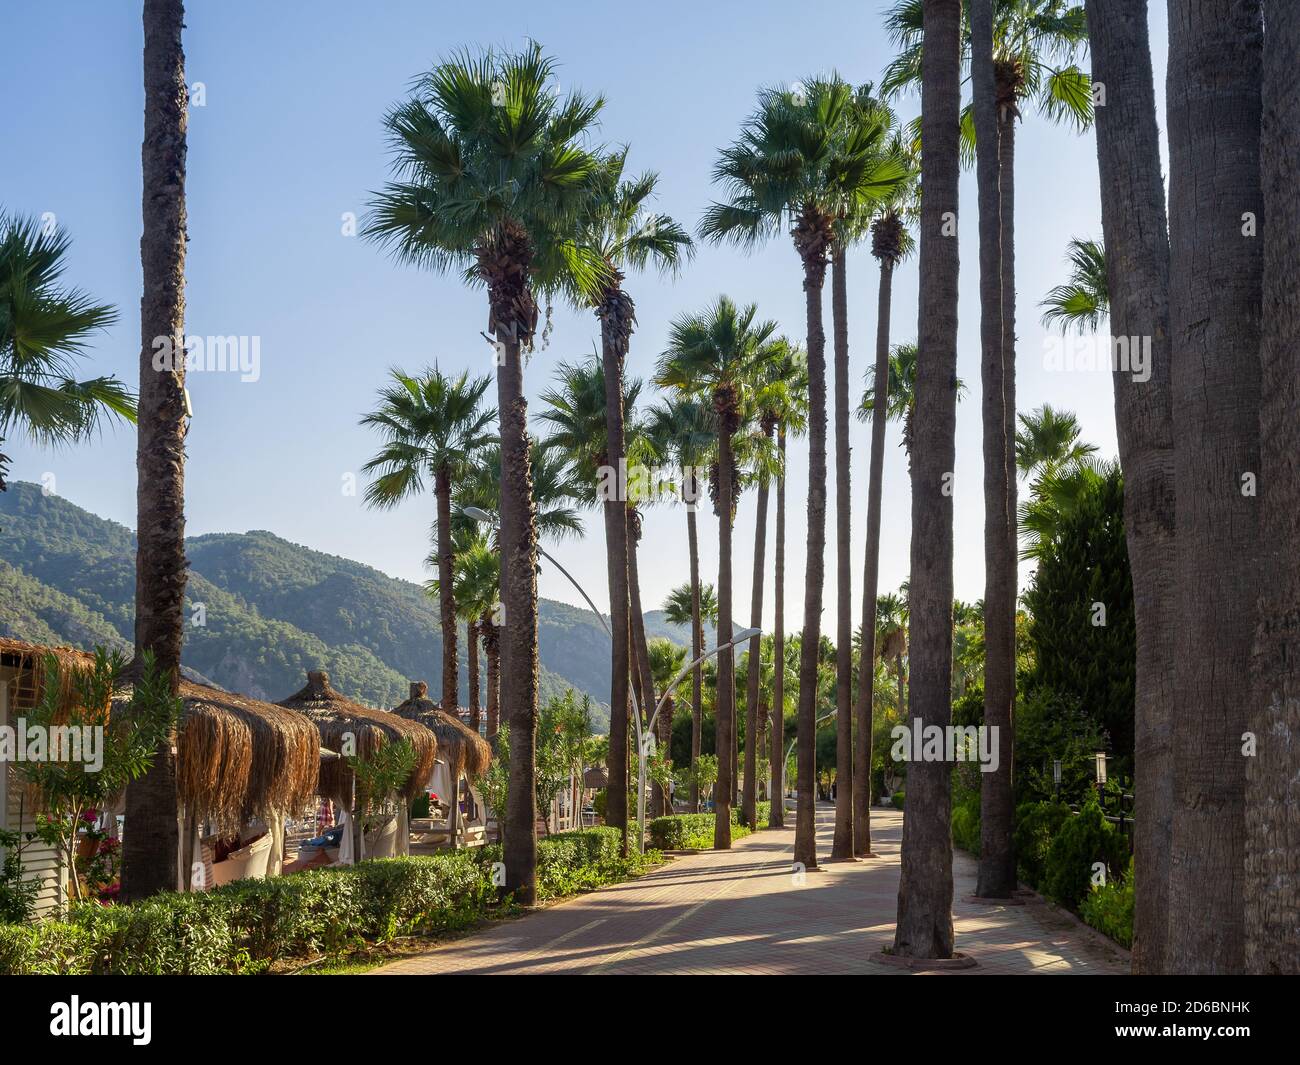 Promenade le long de la côte avec des palmiers dans la ville de Marmaris, en Turquie. Sentier de randonnée avec des palmiers le long de la mer. Banque D'Images